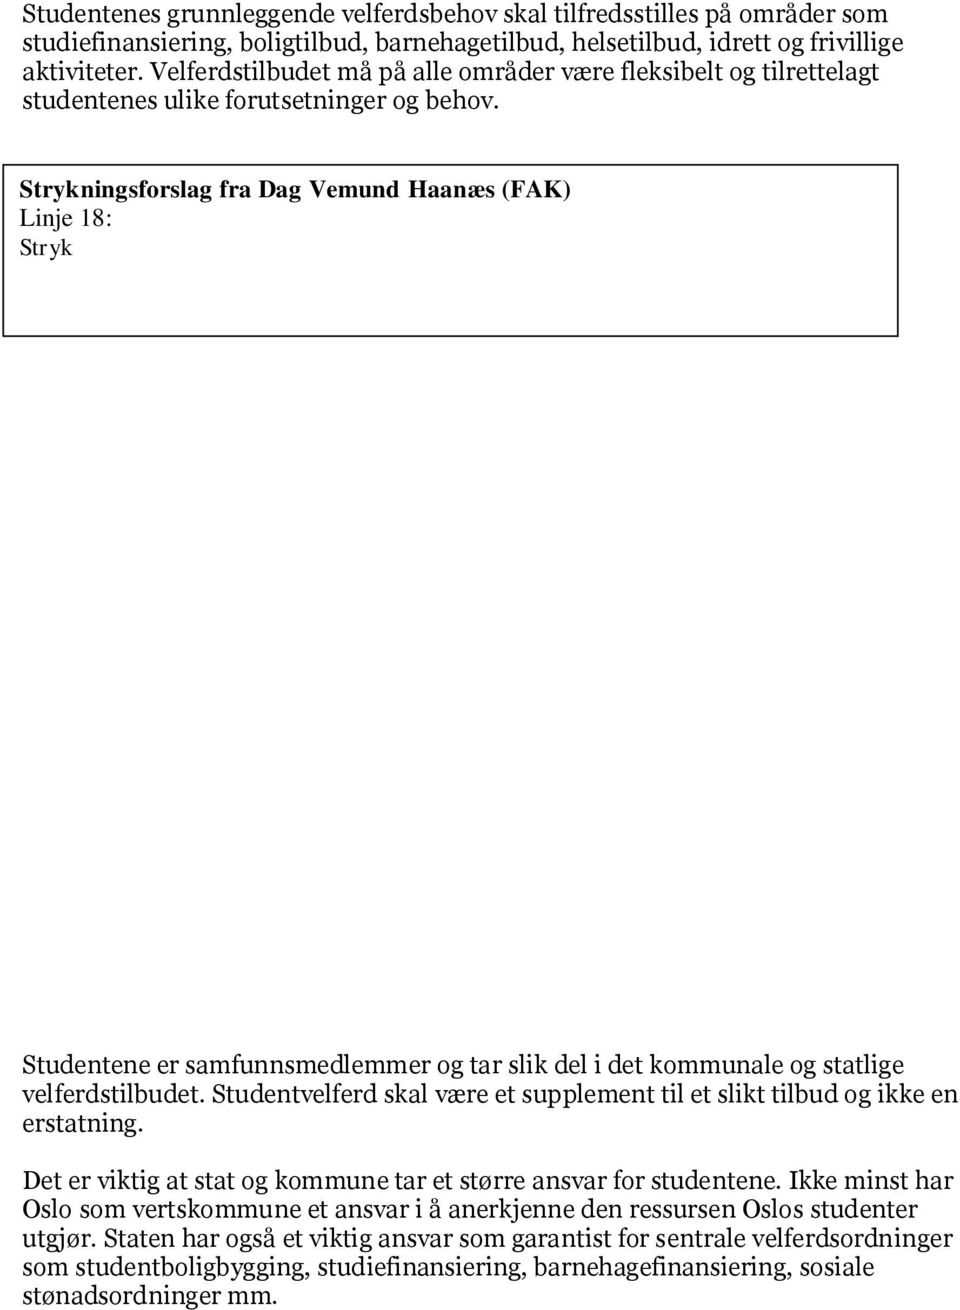 Tilleggsforslag fra Dagvemund Haanæs (FAK) Linje 19: Legg til etter aktiviteter : herunder studentsosiale samlings- og serveringssteder. Tilleggsforslag fra B. E.